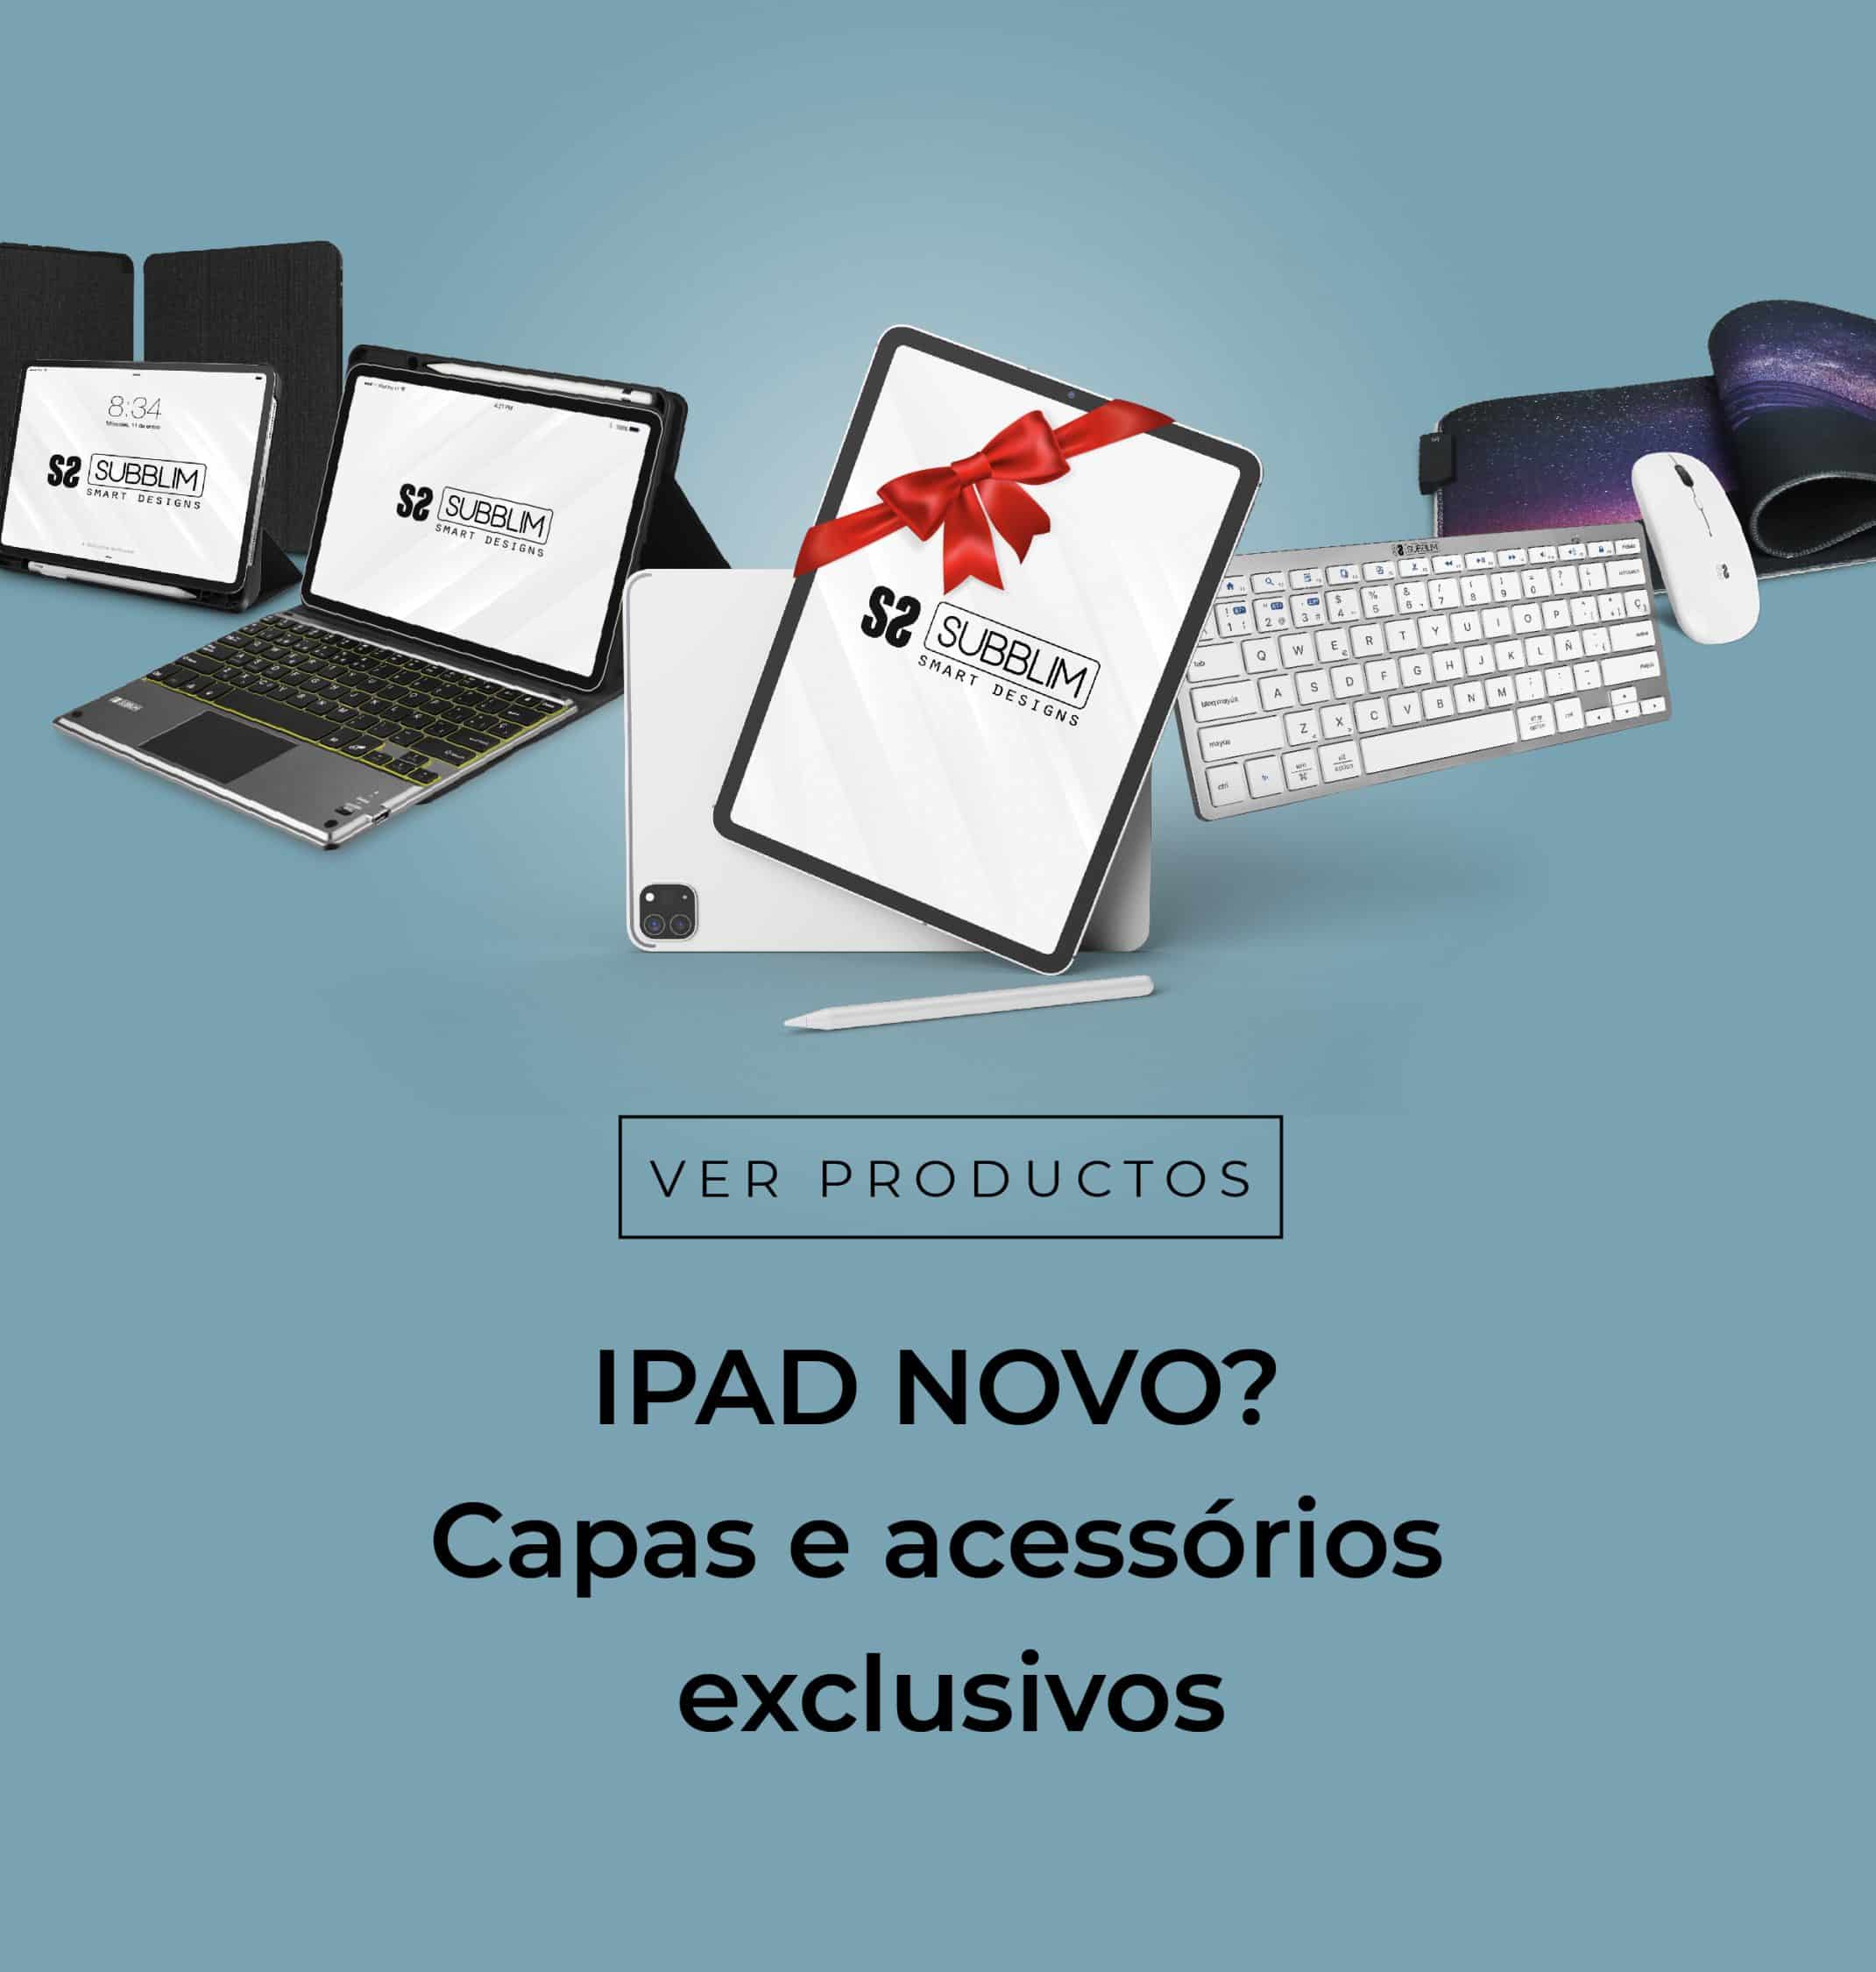 capas, malas e bolsas para apple. Accessórios SUBBLIM para iPad, Macbook o iMac, compatíveis com Apple